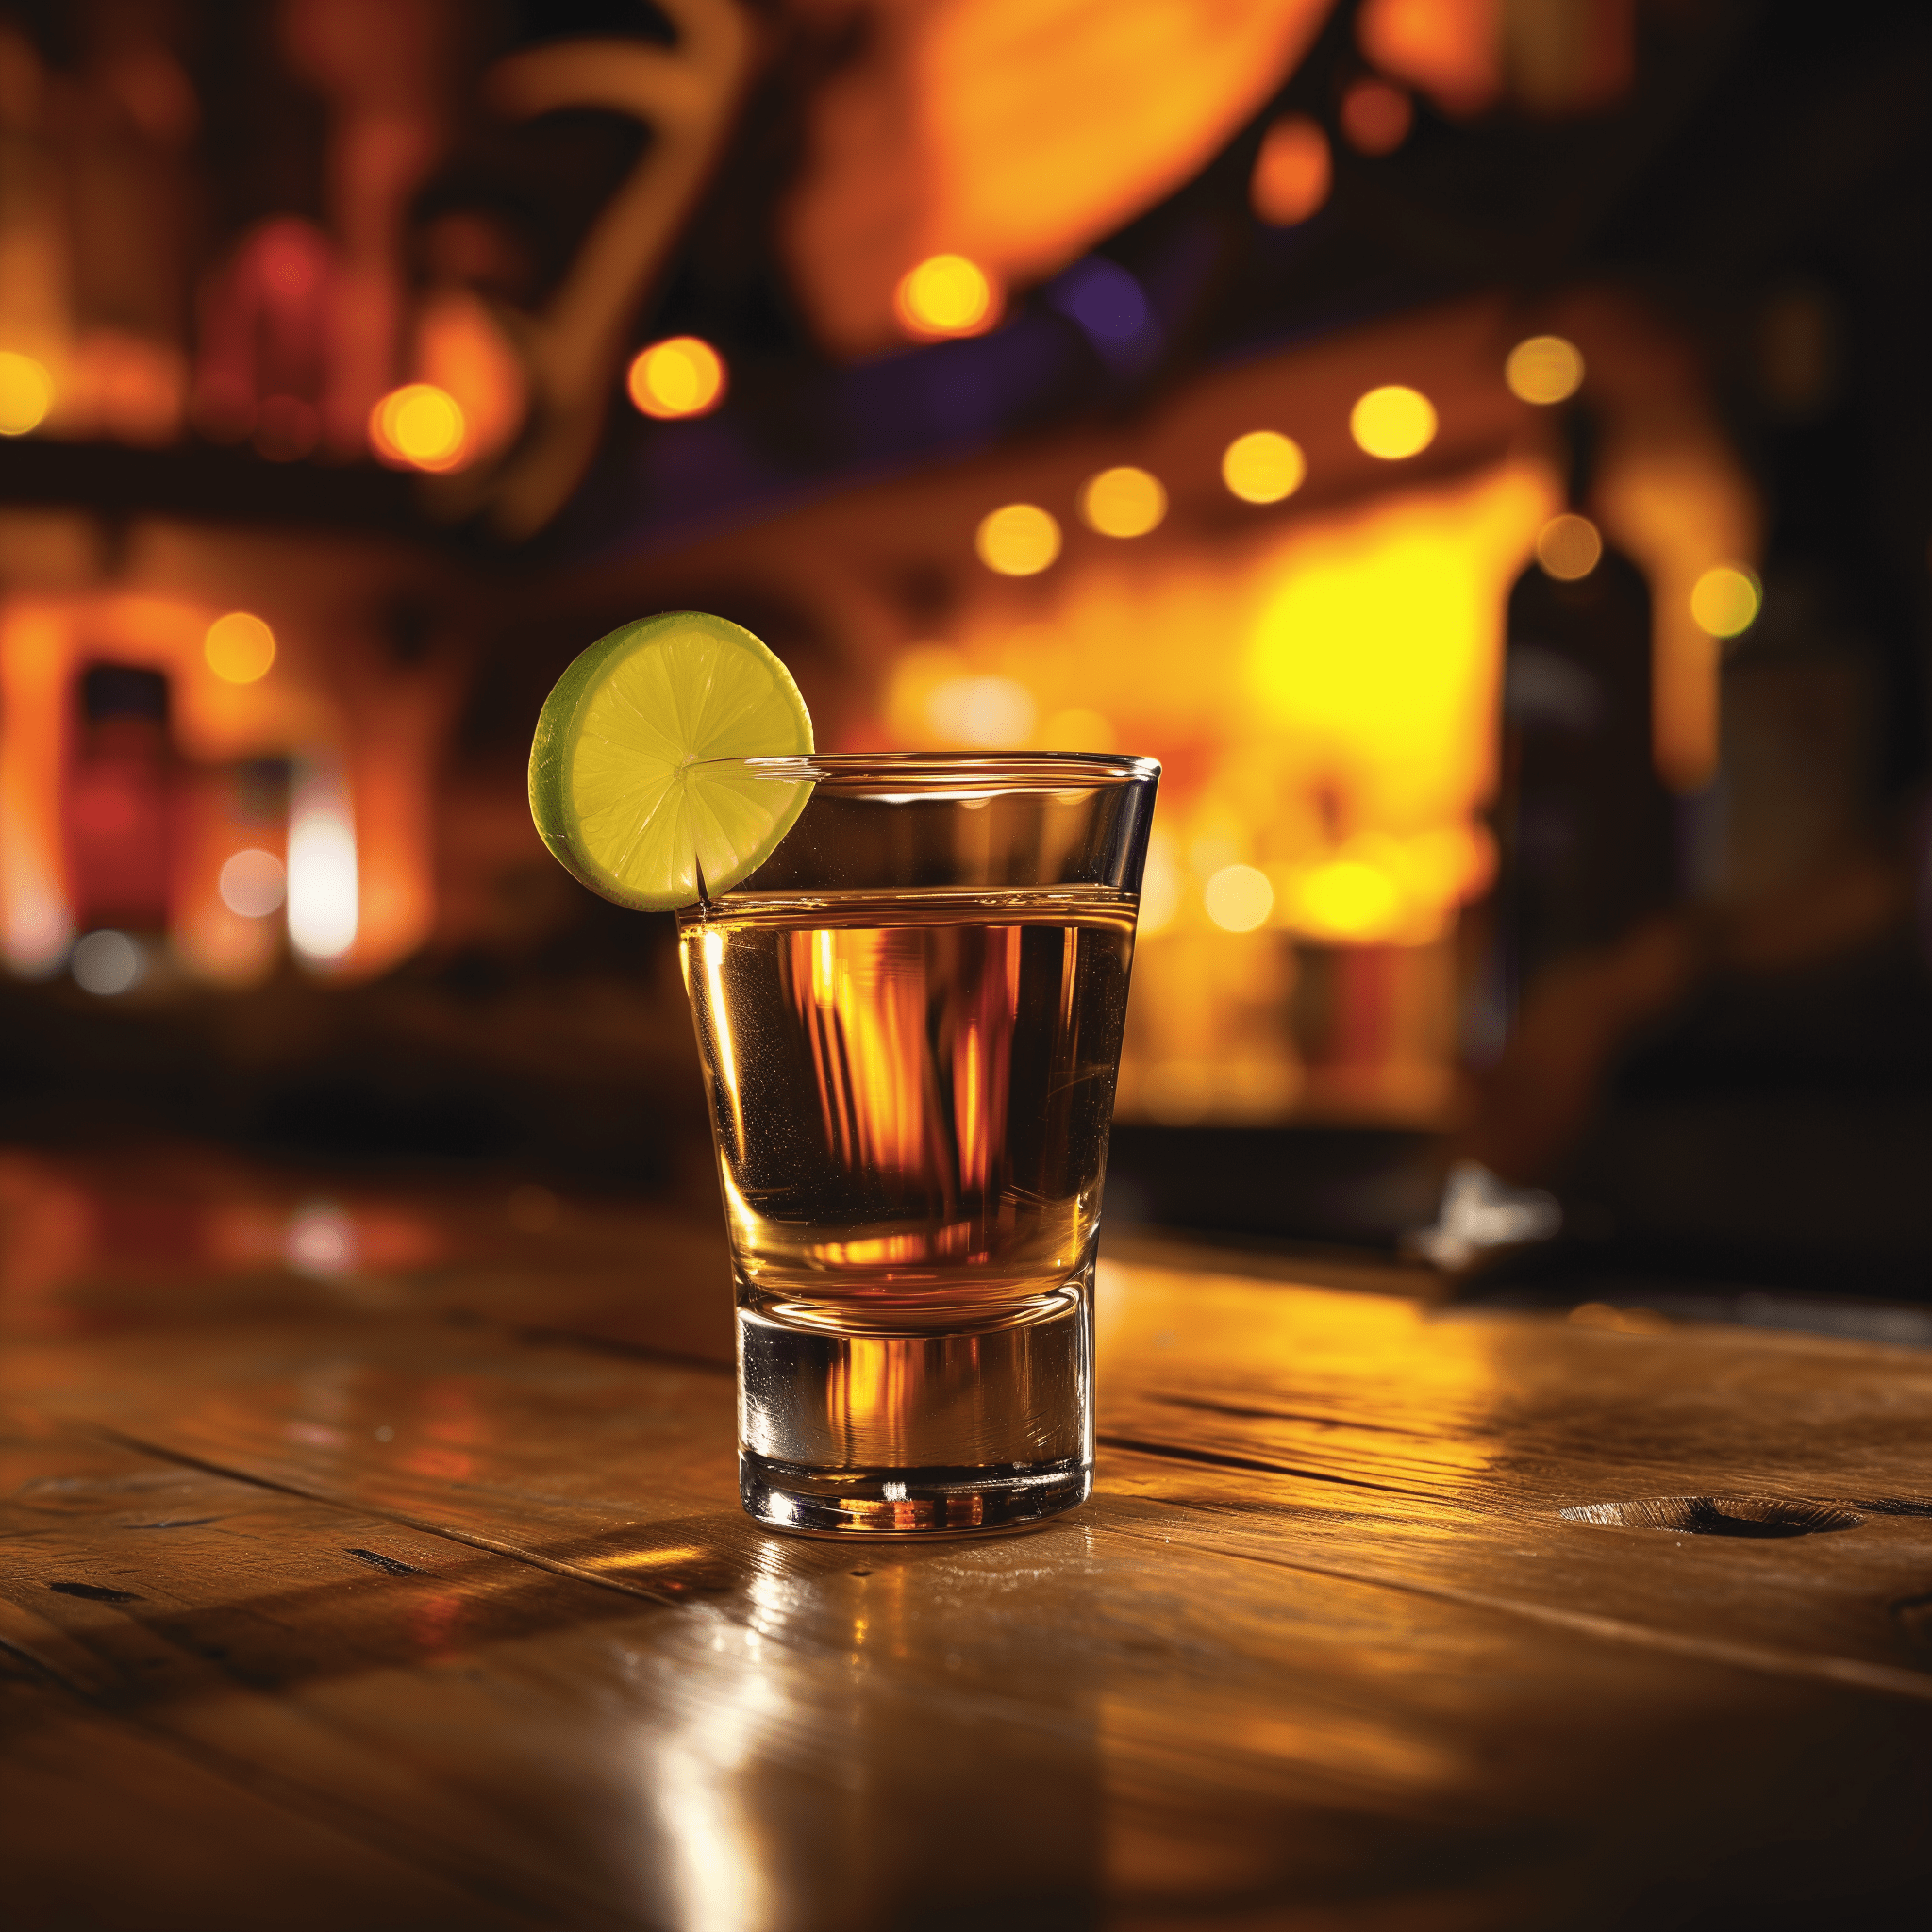 Rocky Mountain Receta - El shot Rocky Mountain ofrece un sabor suave y dulce con un toque cítrico del jugo de lima. El Southern Comfort proporciona un calor similar al whiskey, mientras que el amaretto añade un toque de almendra y riqueza.